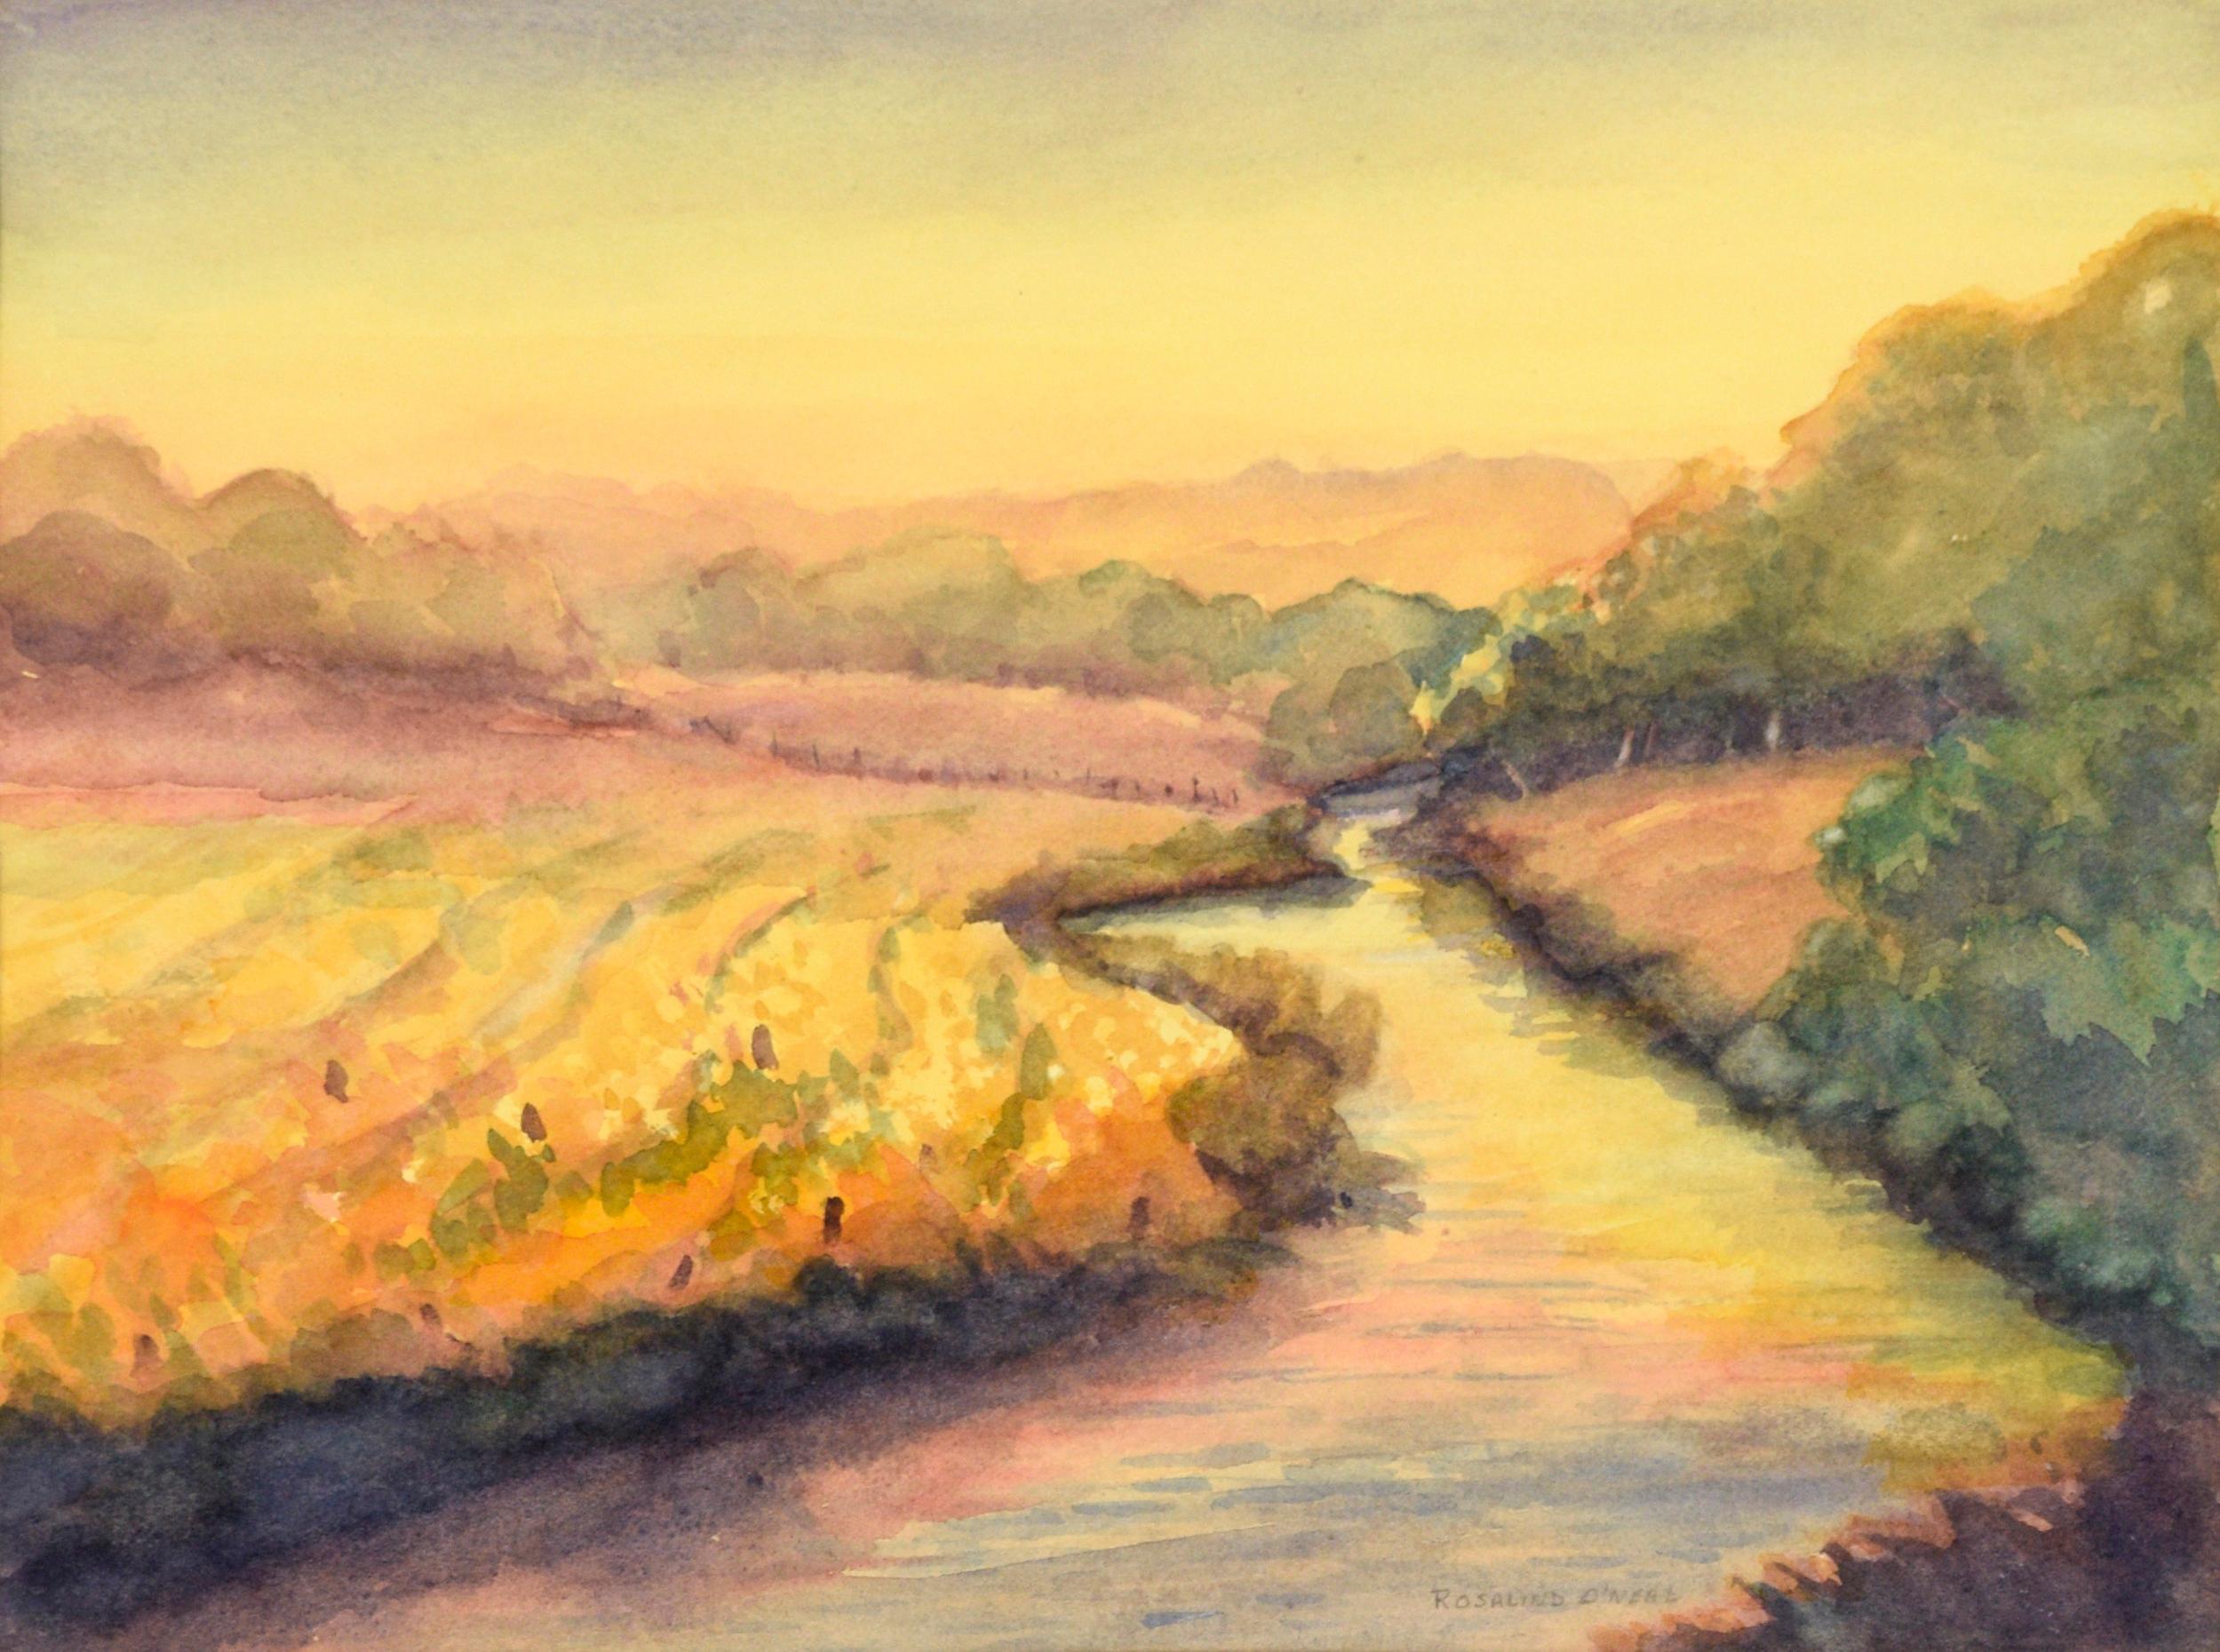 Golden Hour at the River (Gold Hour at the River) - paysage à l'aquarelle sur papier - Art de Rosalind O'Neal